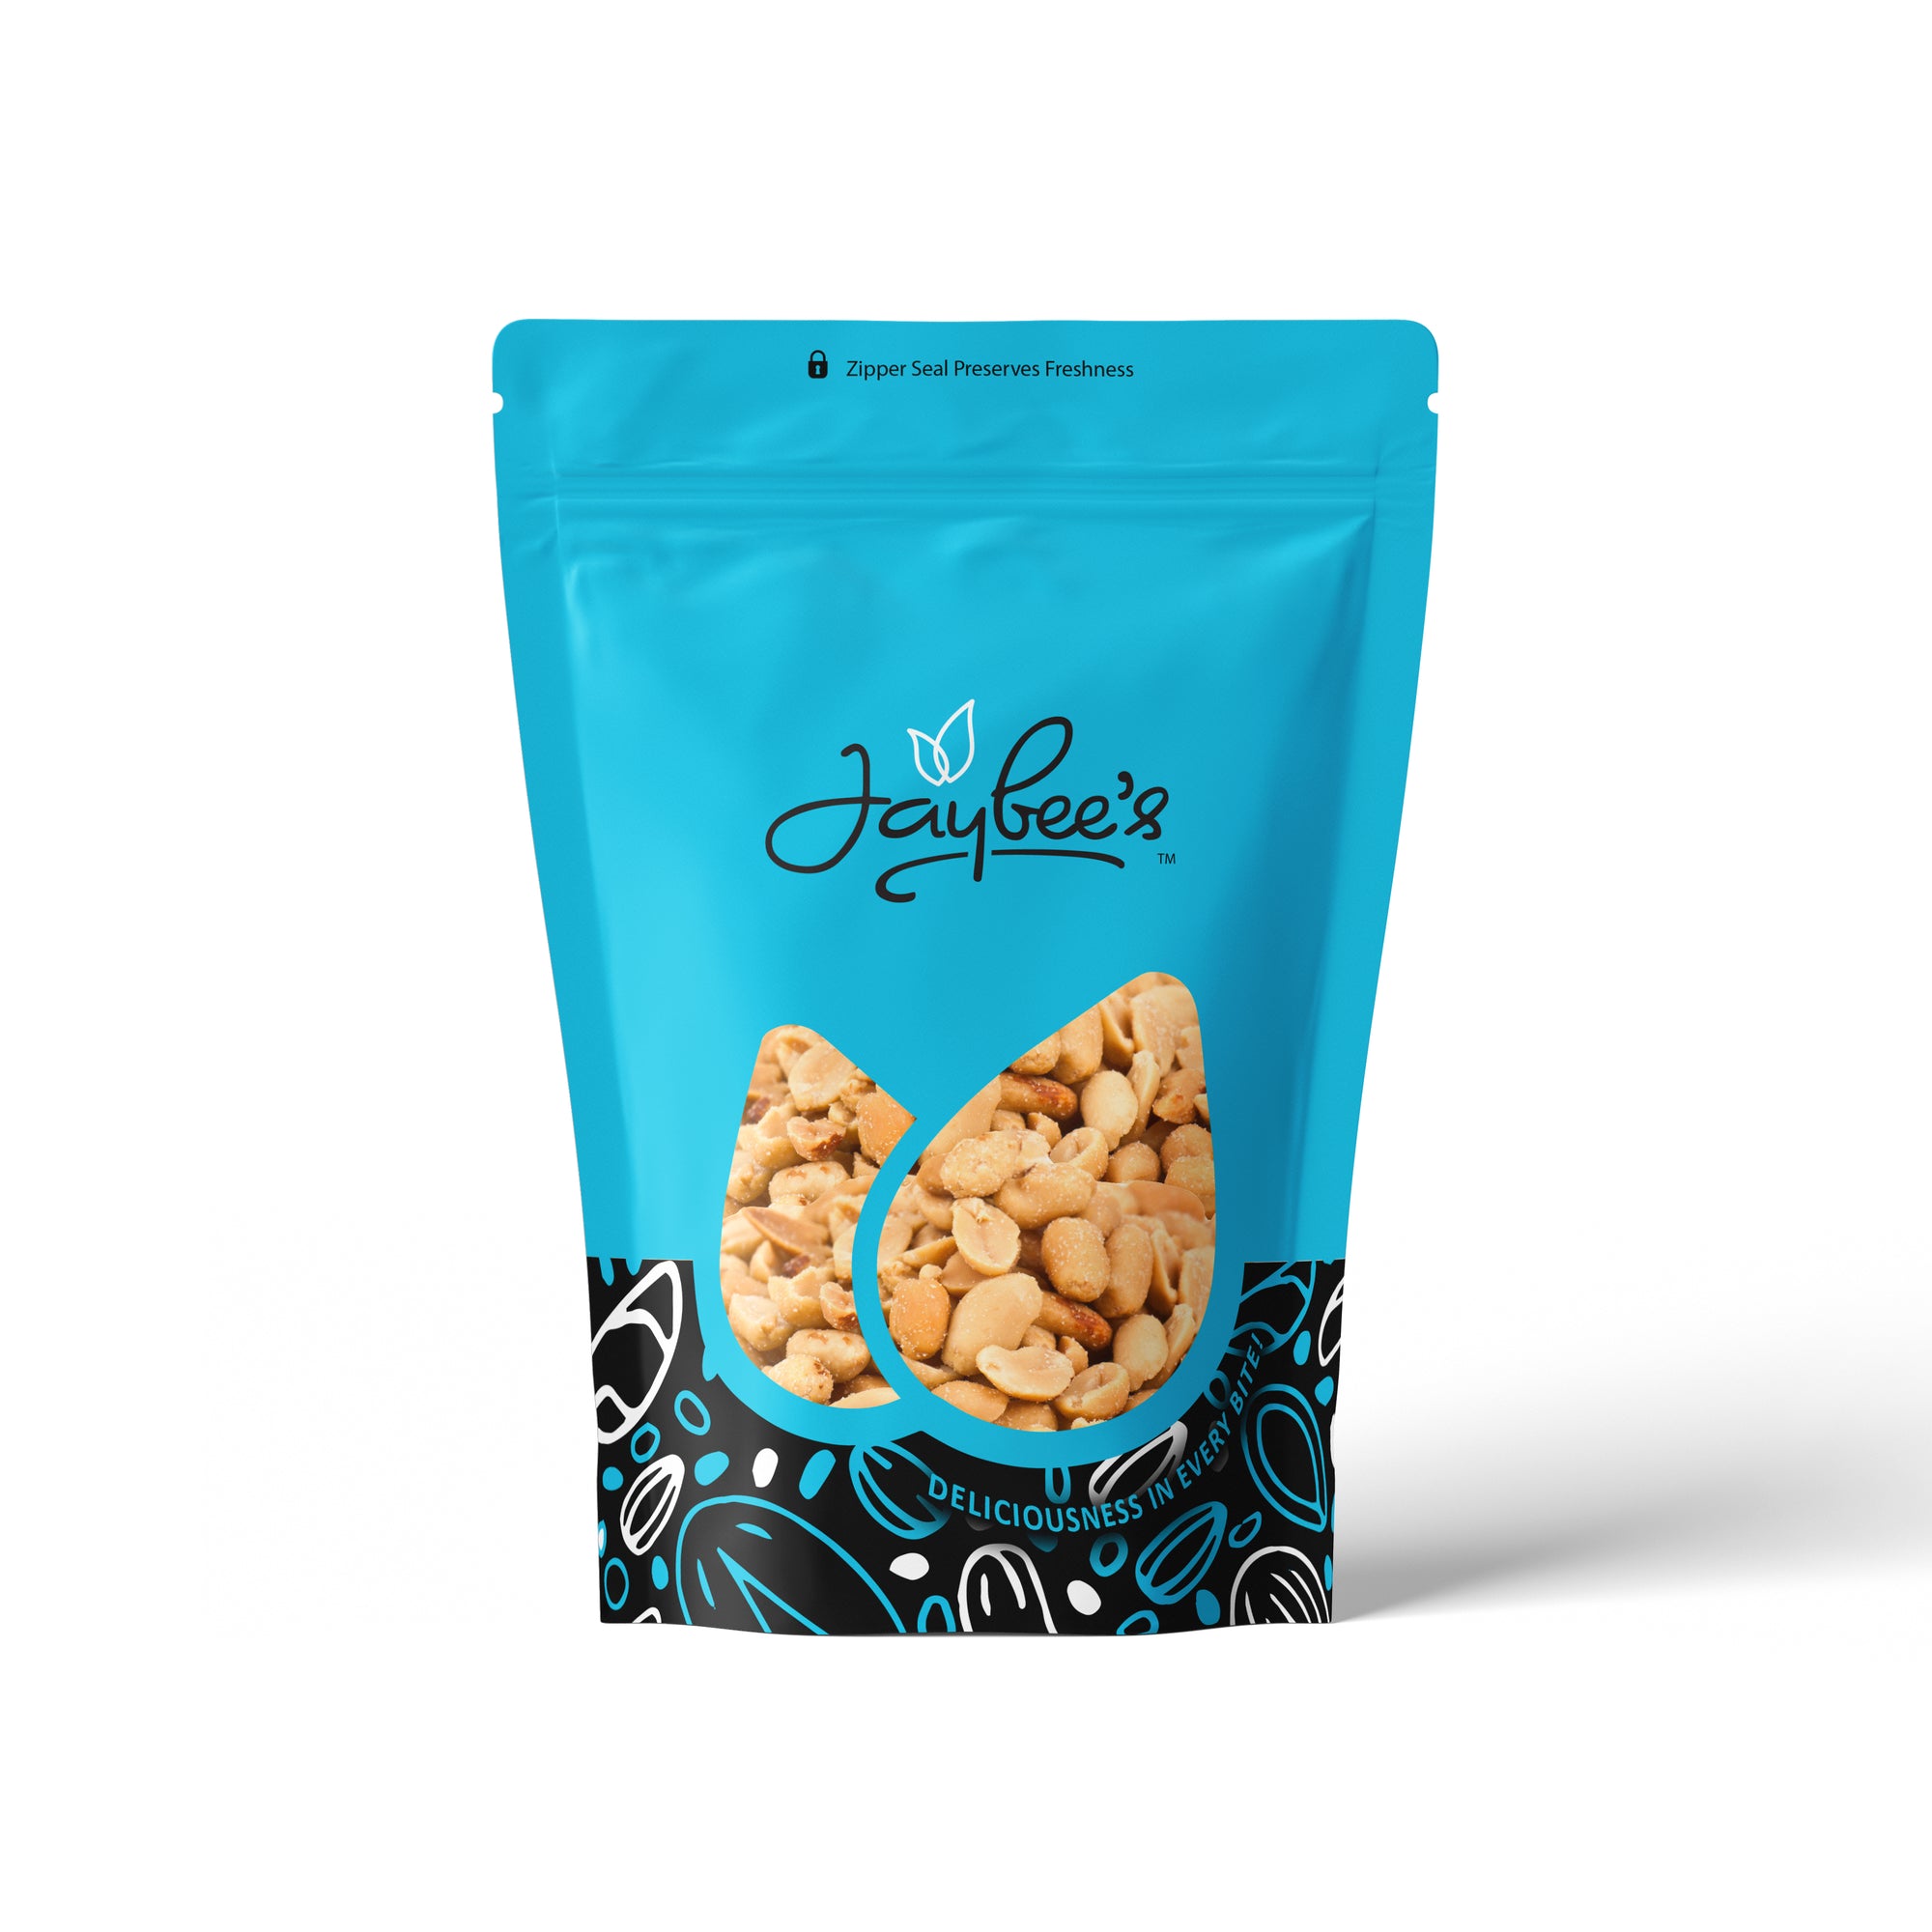 Peanuts - Roasted & Salted 15 oz Bag